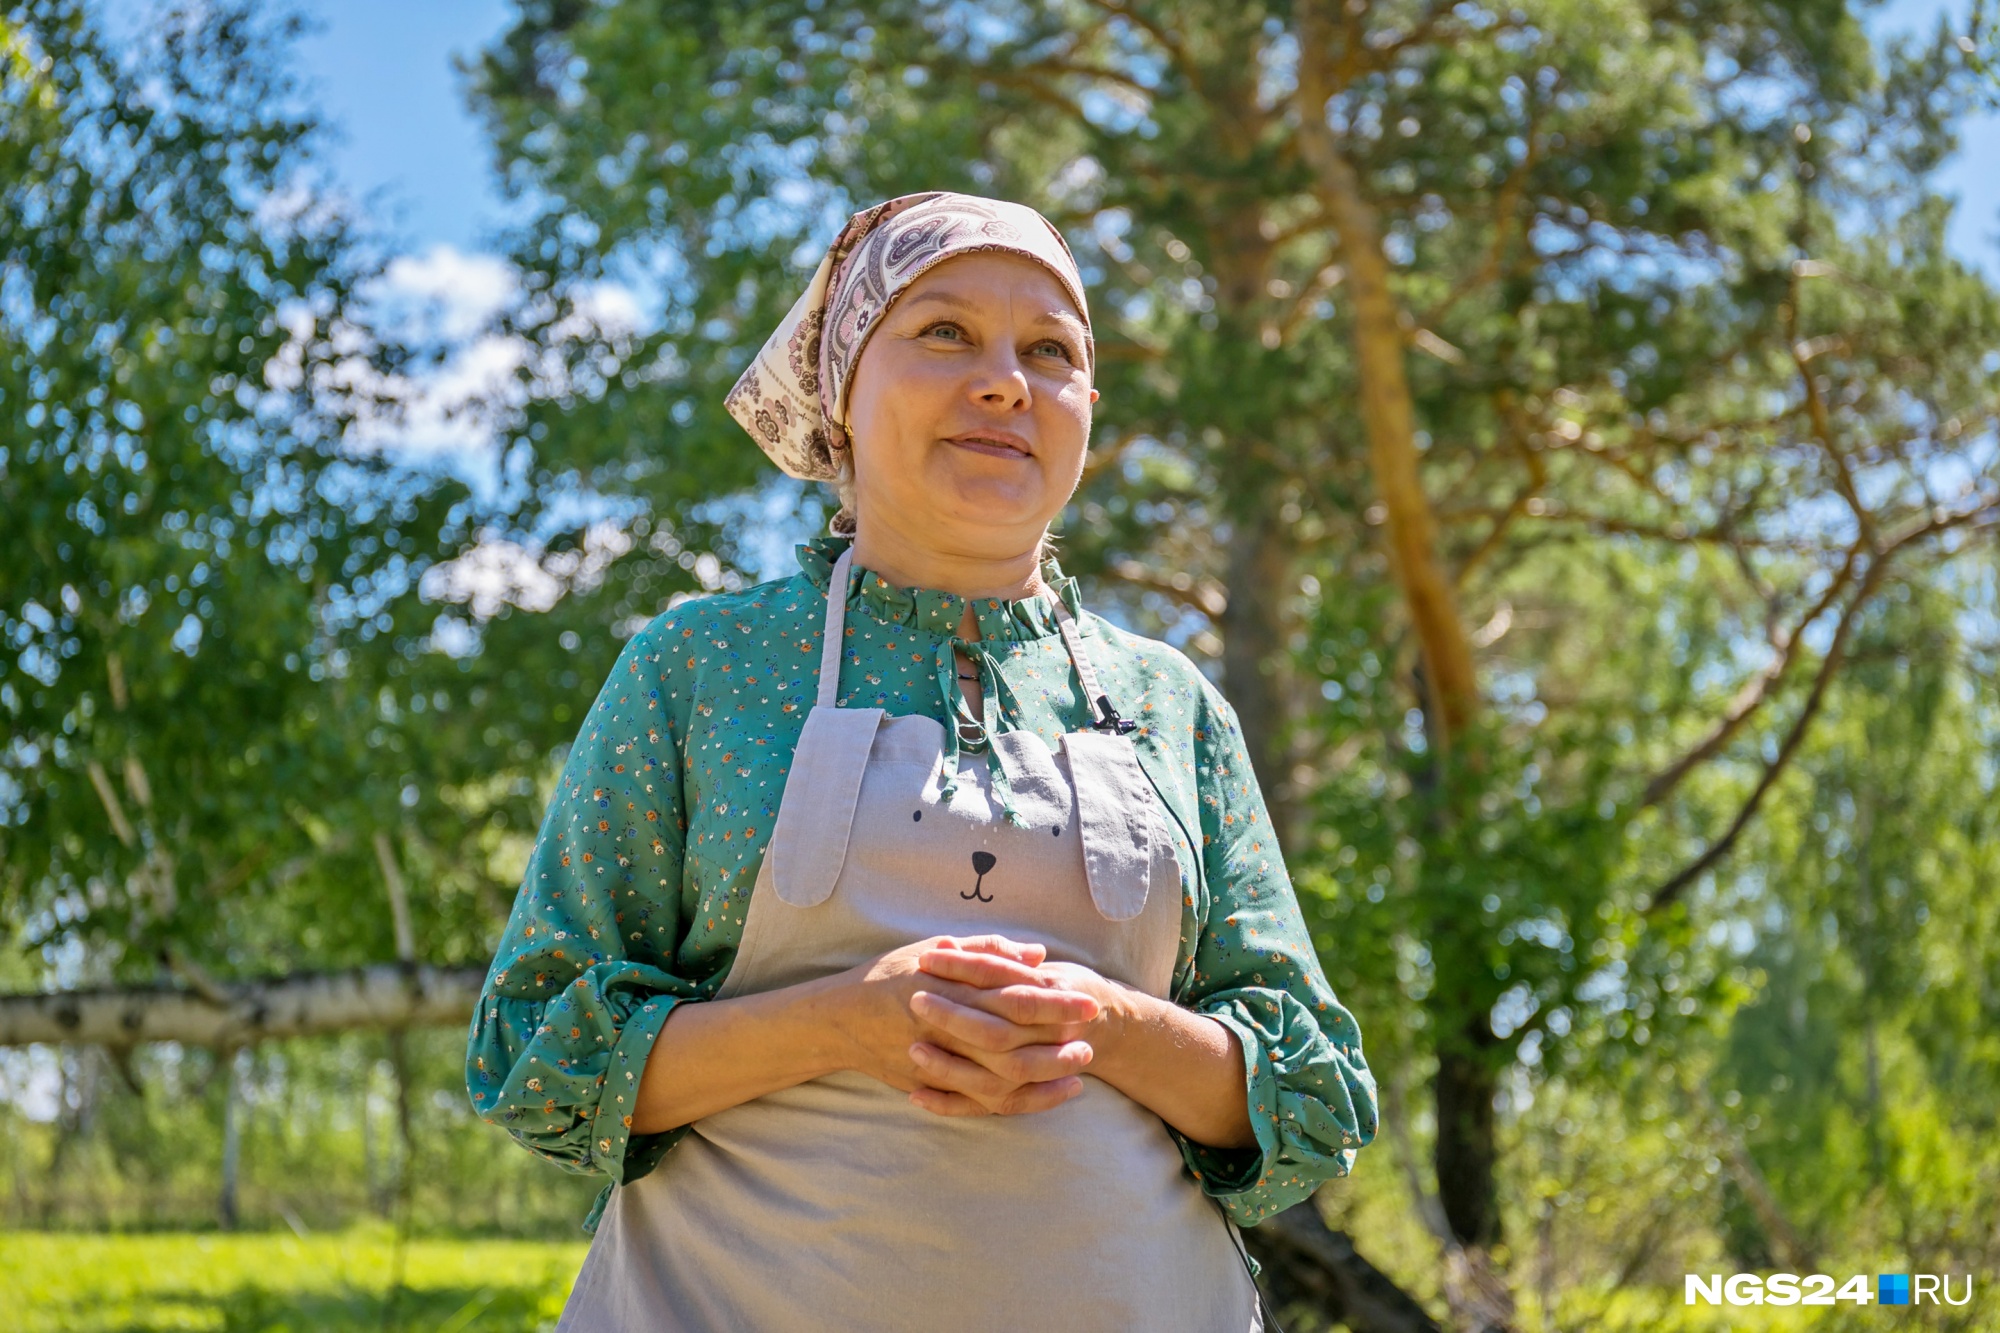 Азы «сельского» бизнеса Юлия постигала самостоятельно, советовалась с другими фермерами